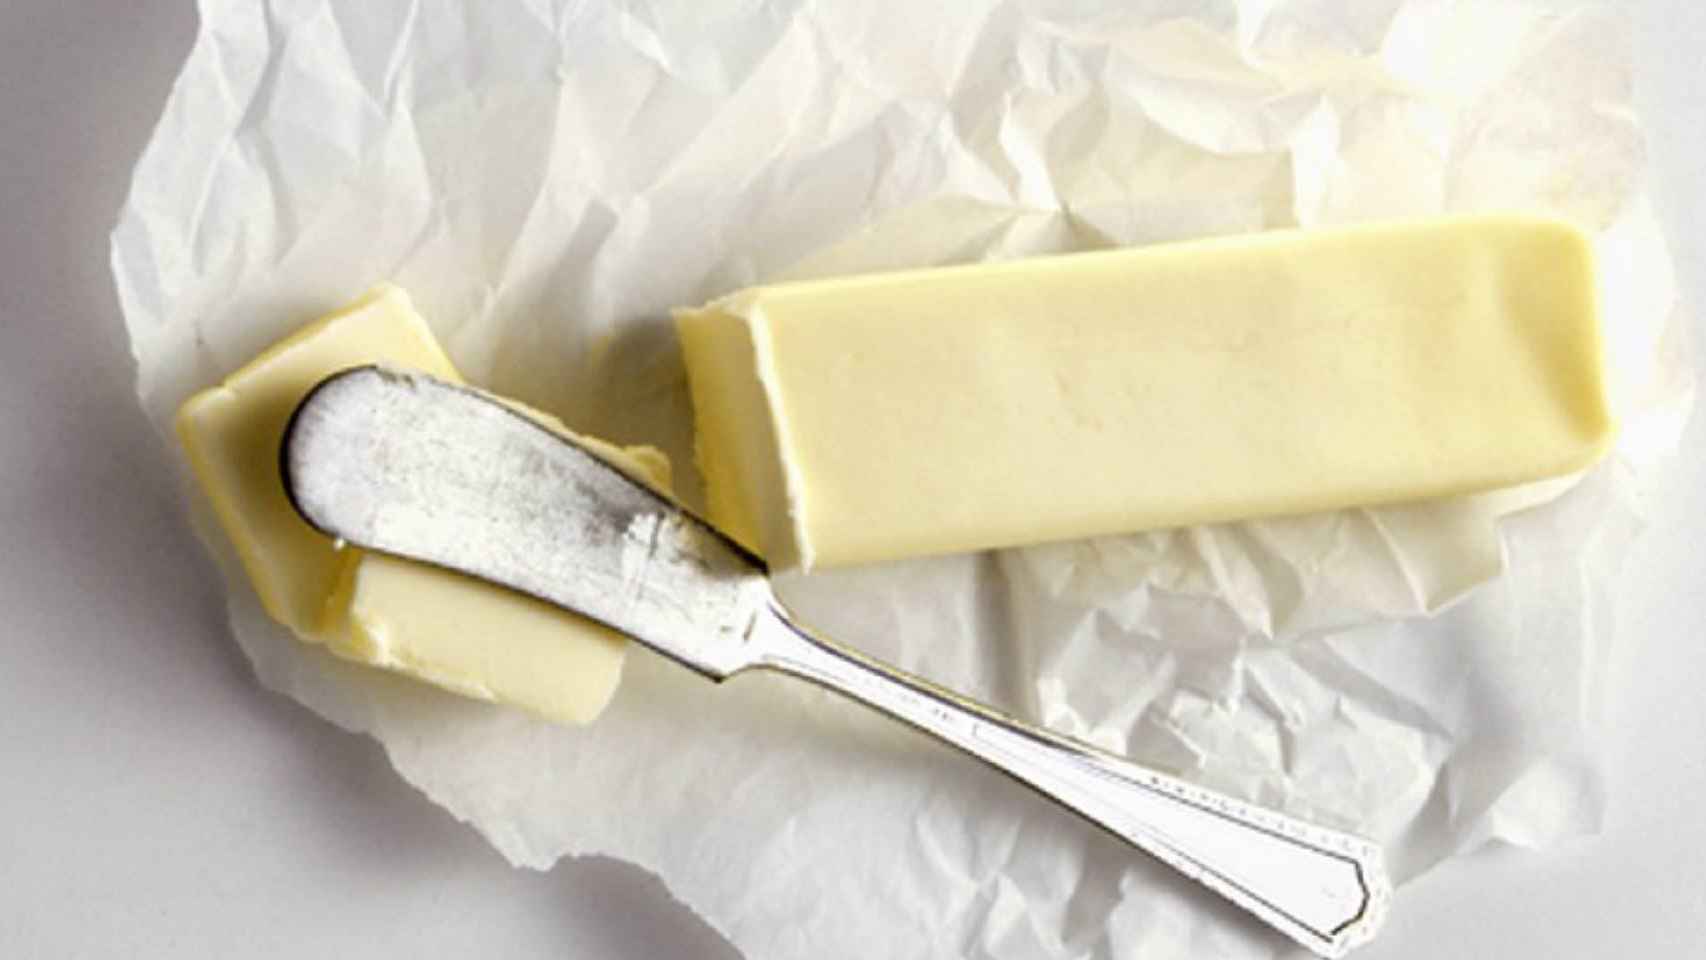 Los alimentos procesados como la margarina pueden contener grasas trans.